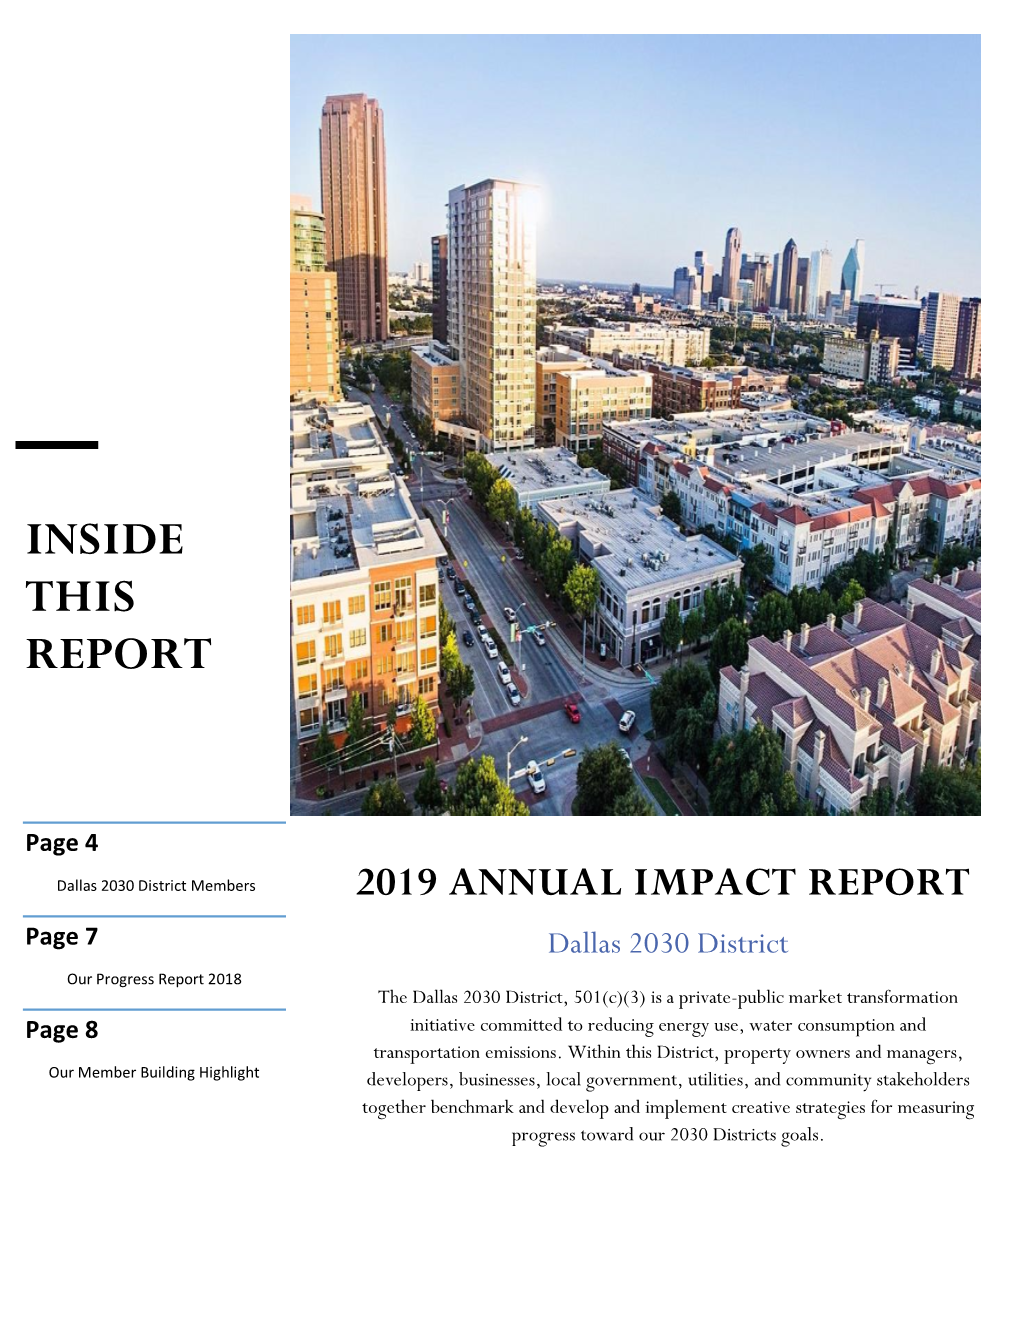 Dallas 2030 District 2019 Annual Impact Report